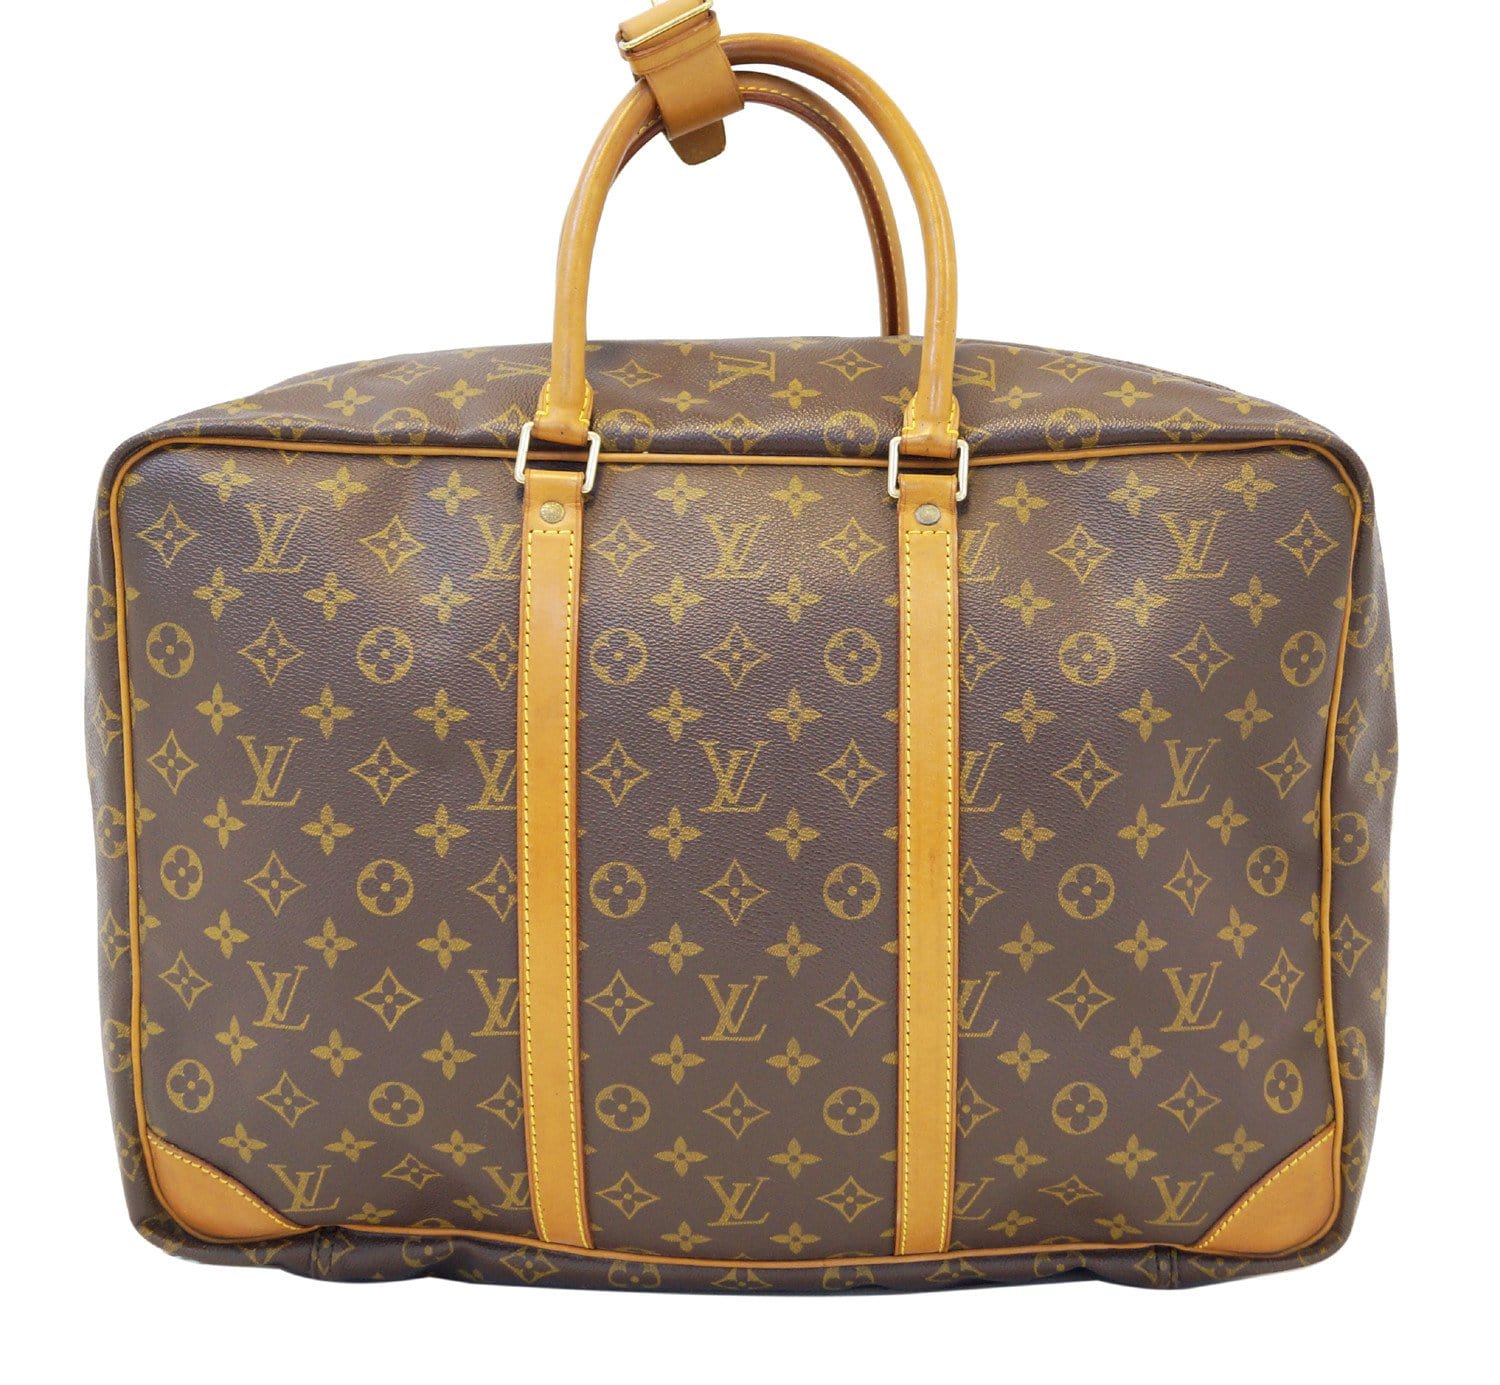 LOUIS VUITTON Sirius 45 Monogram Canvas Suitcase Travel Bag